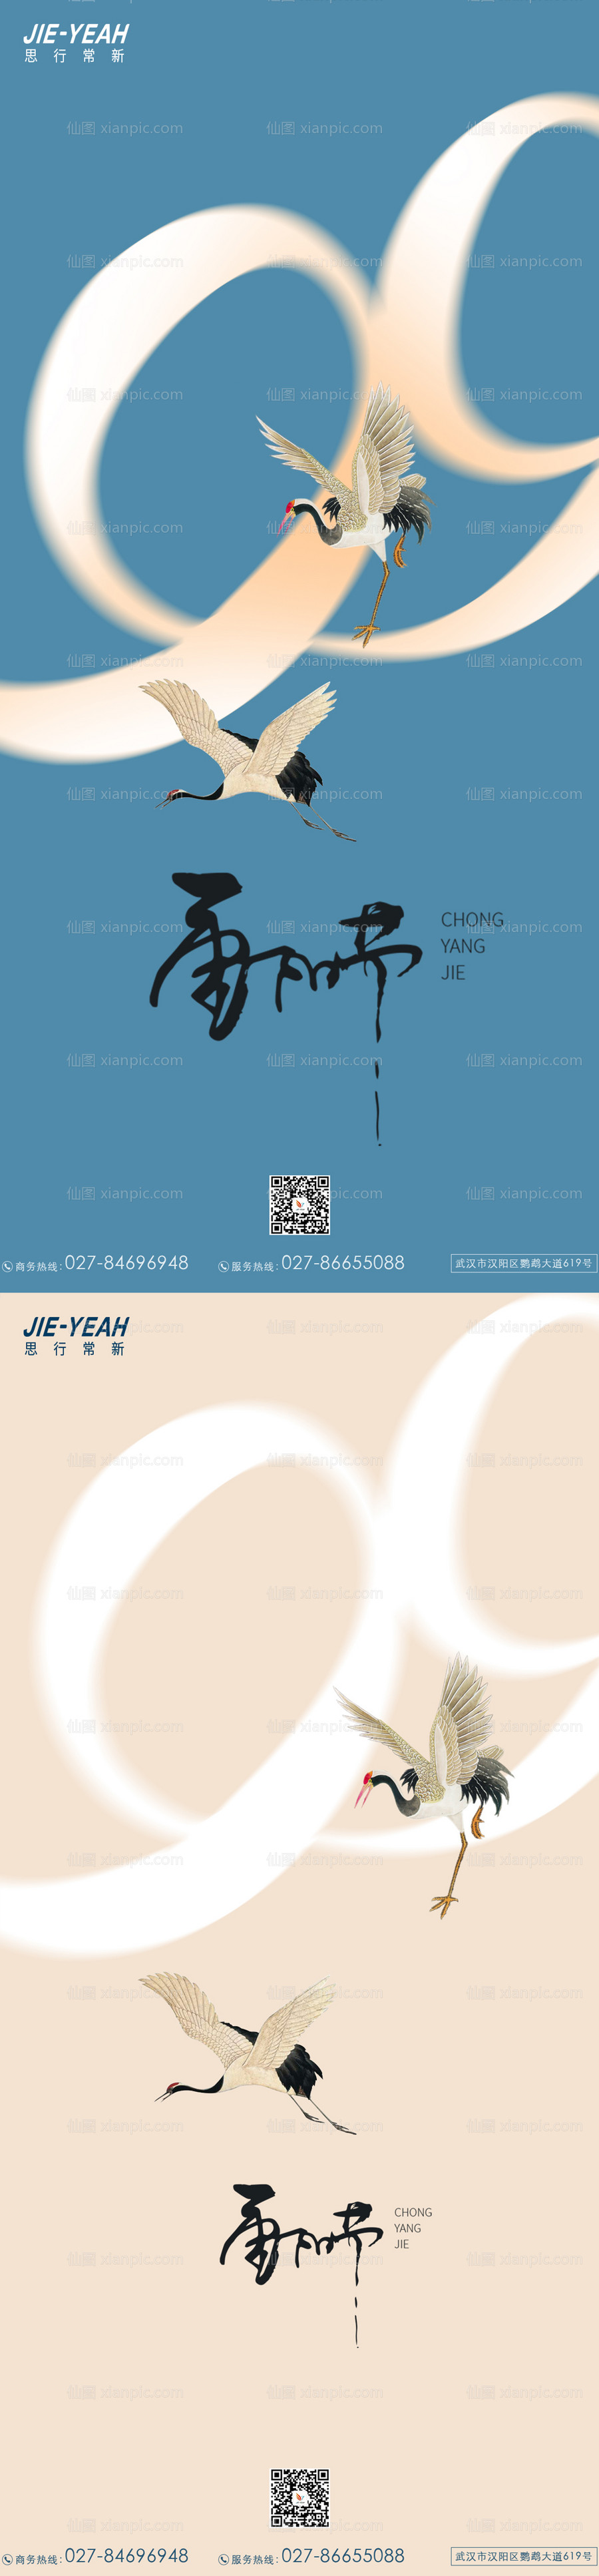 素材乐-重阳节系列海报